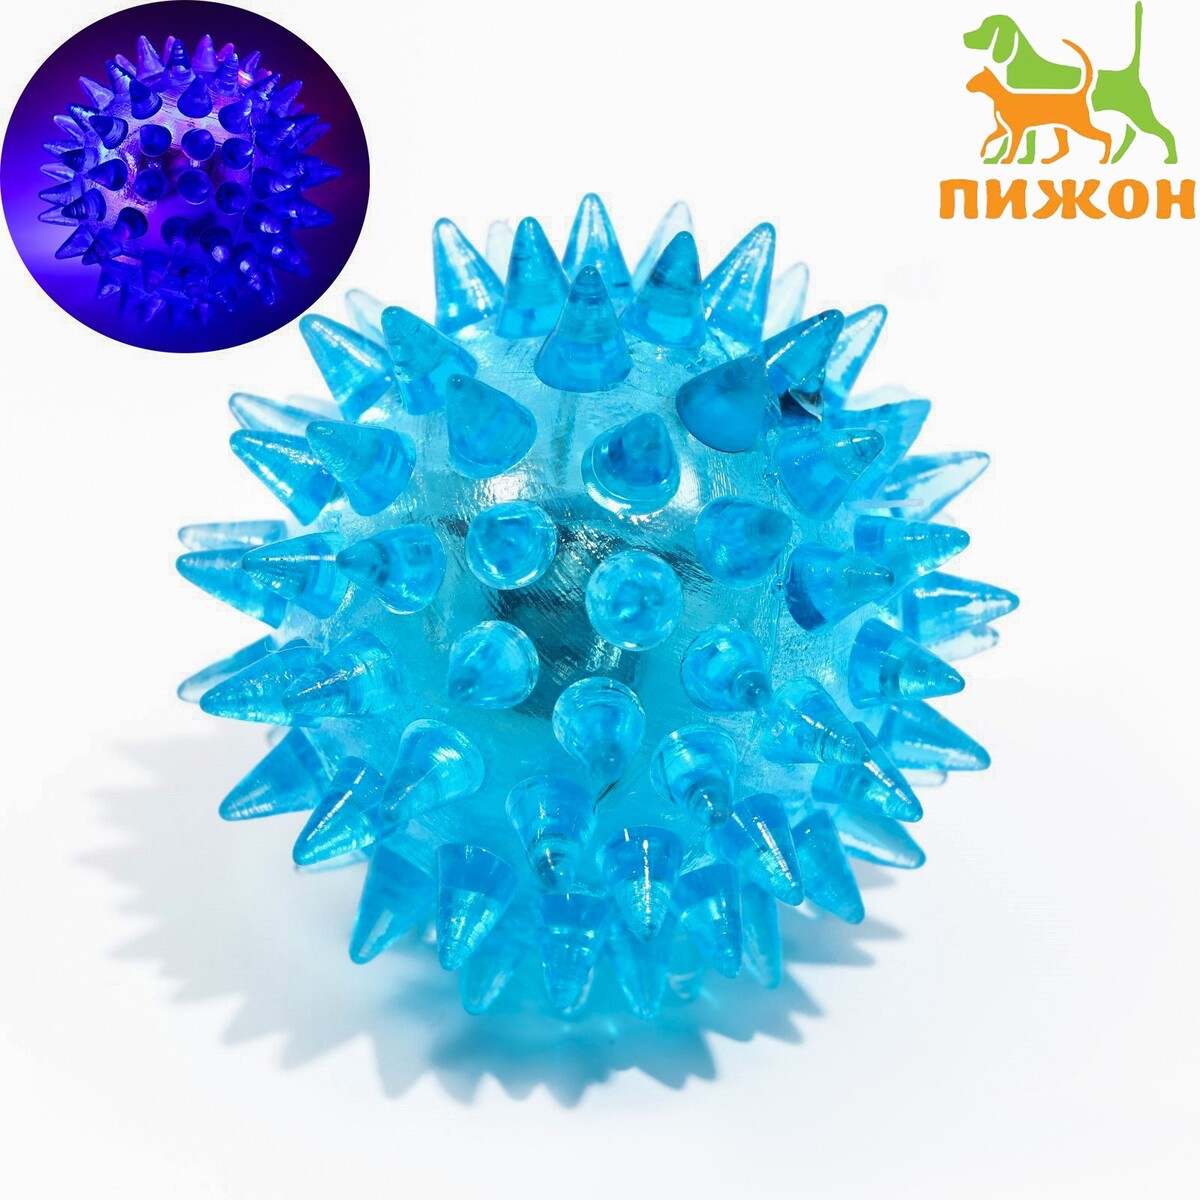 Мяч светящийся для животных малый, tpr, 4,5 см, голубой Пижон 01222147 - фото 1